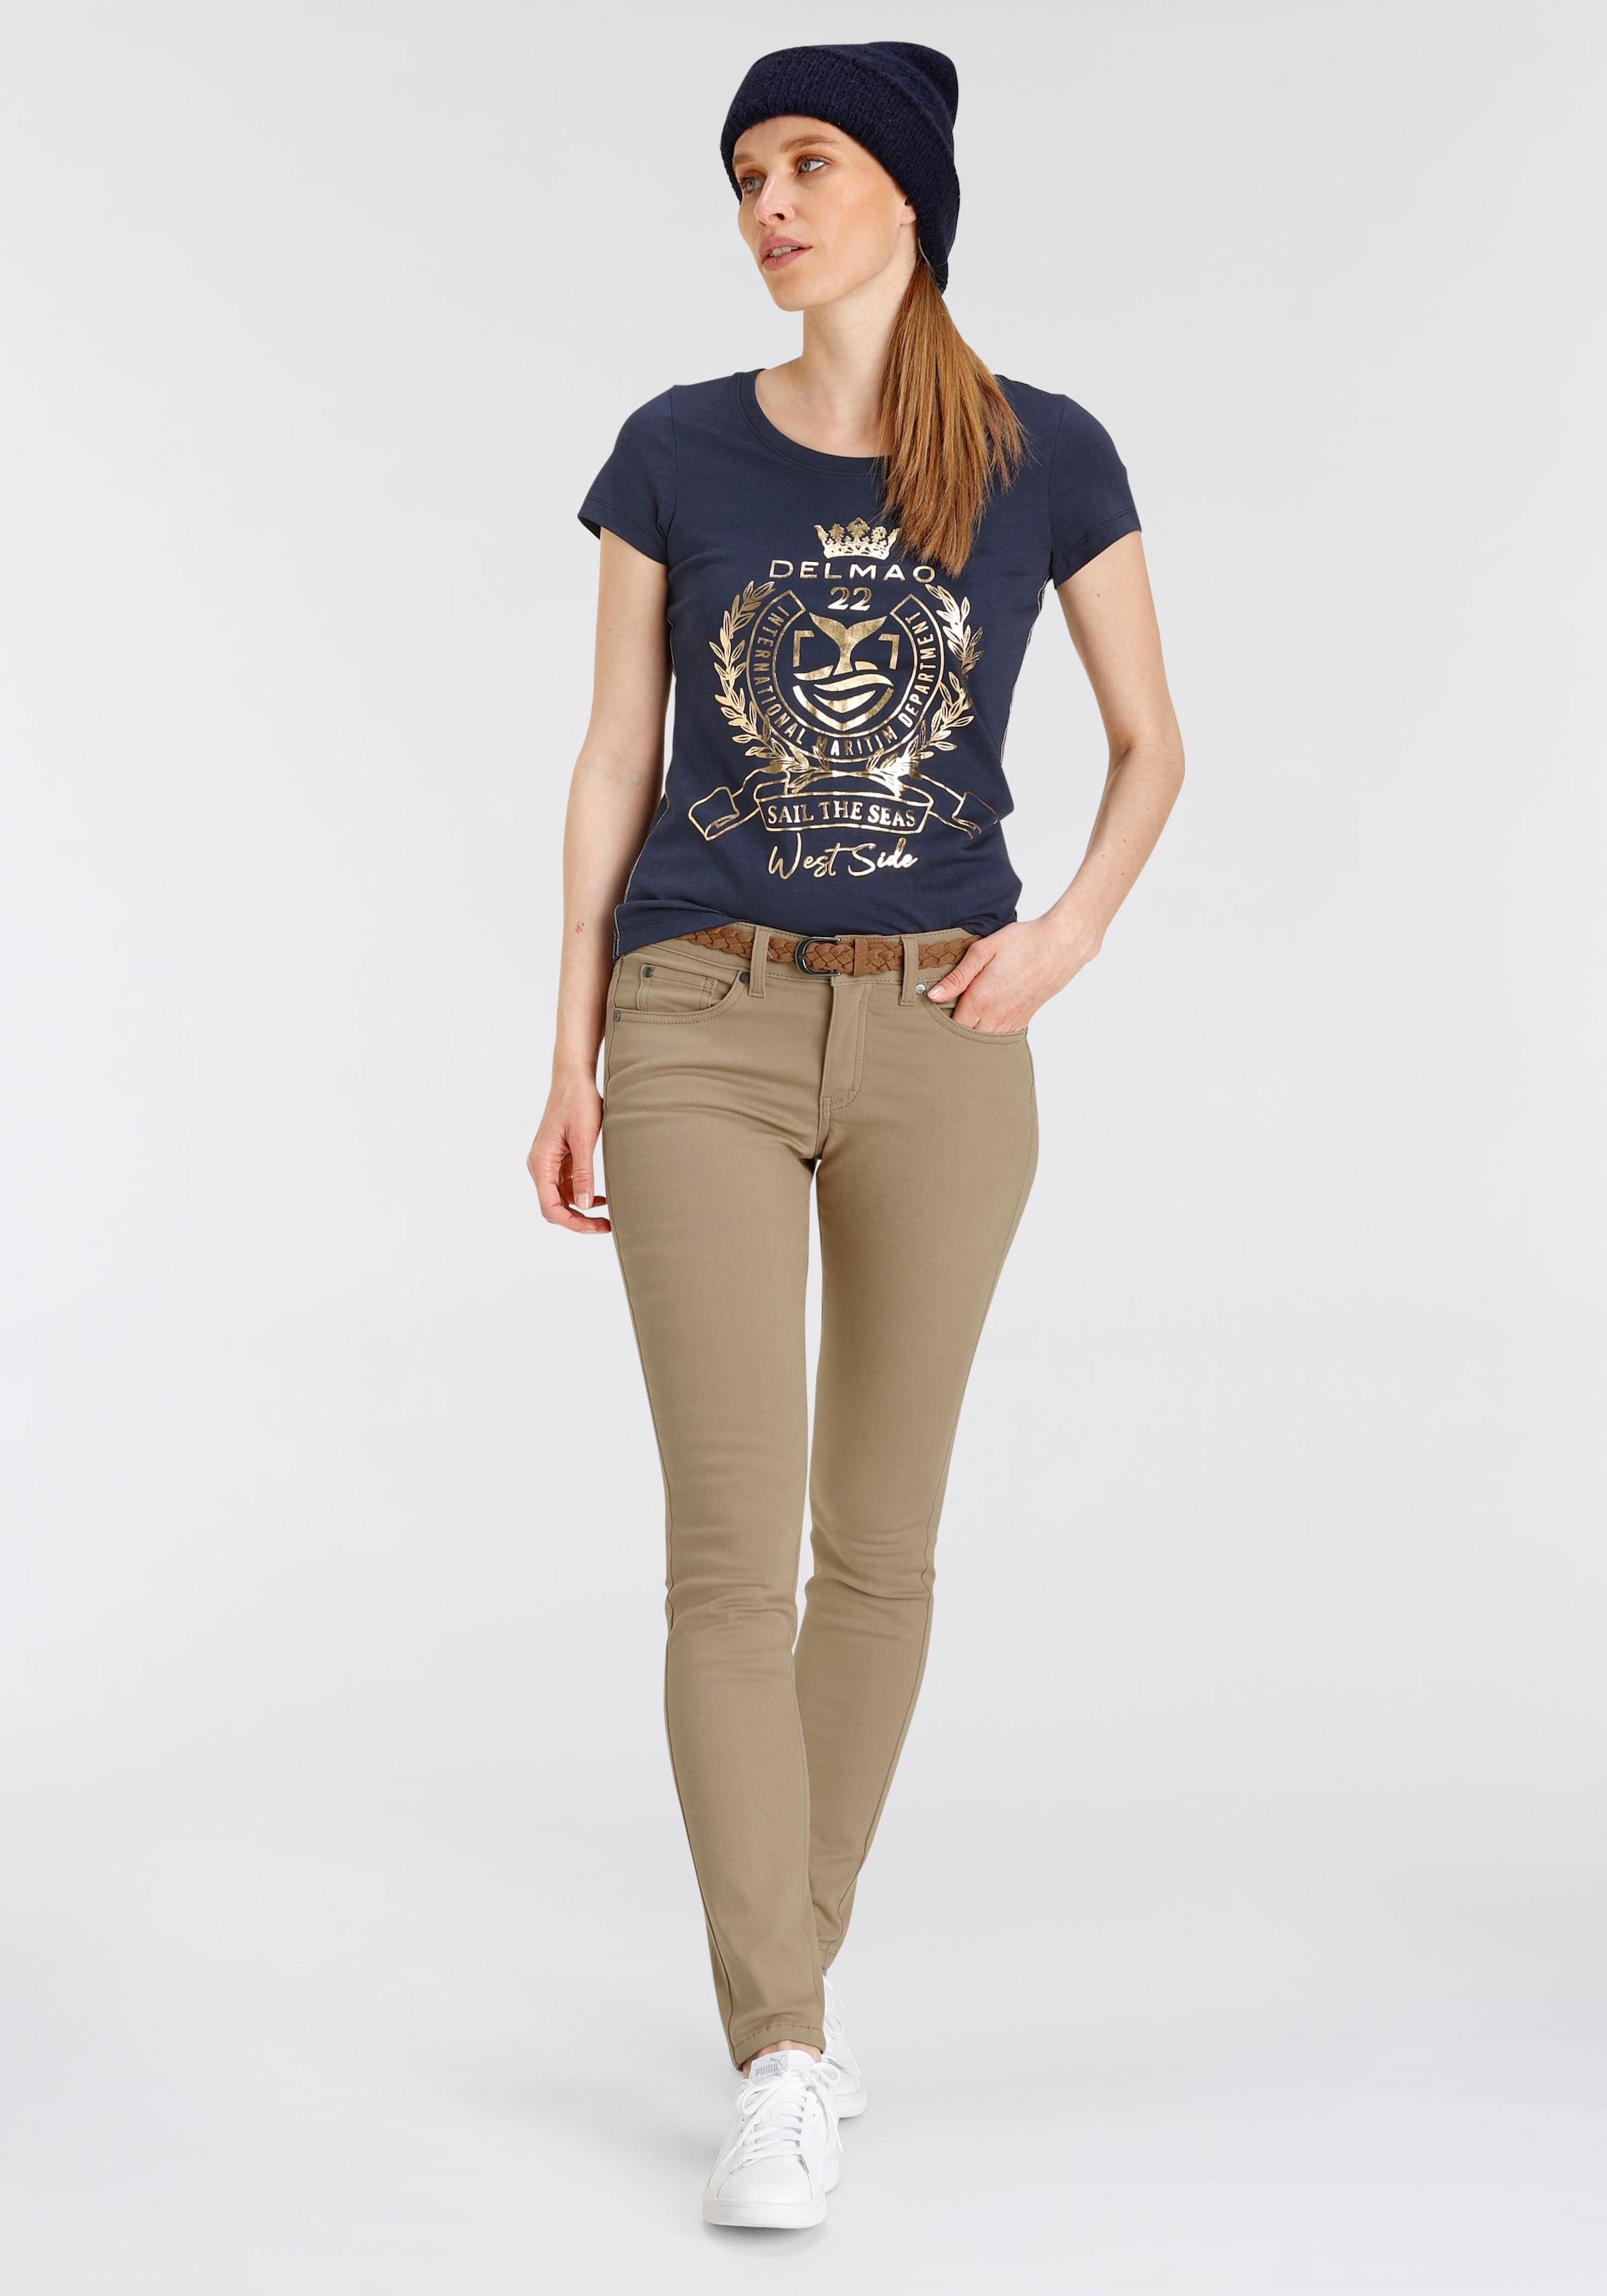 hochwertigem, DELMAO NEUE ♕ mit versandkostenfrei T-Shirt, MARKE! auf - goldfarbenem Folienprint